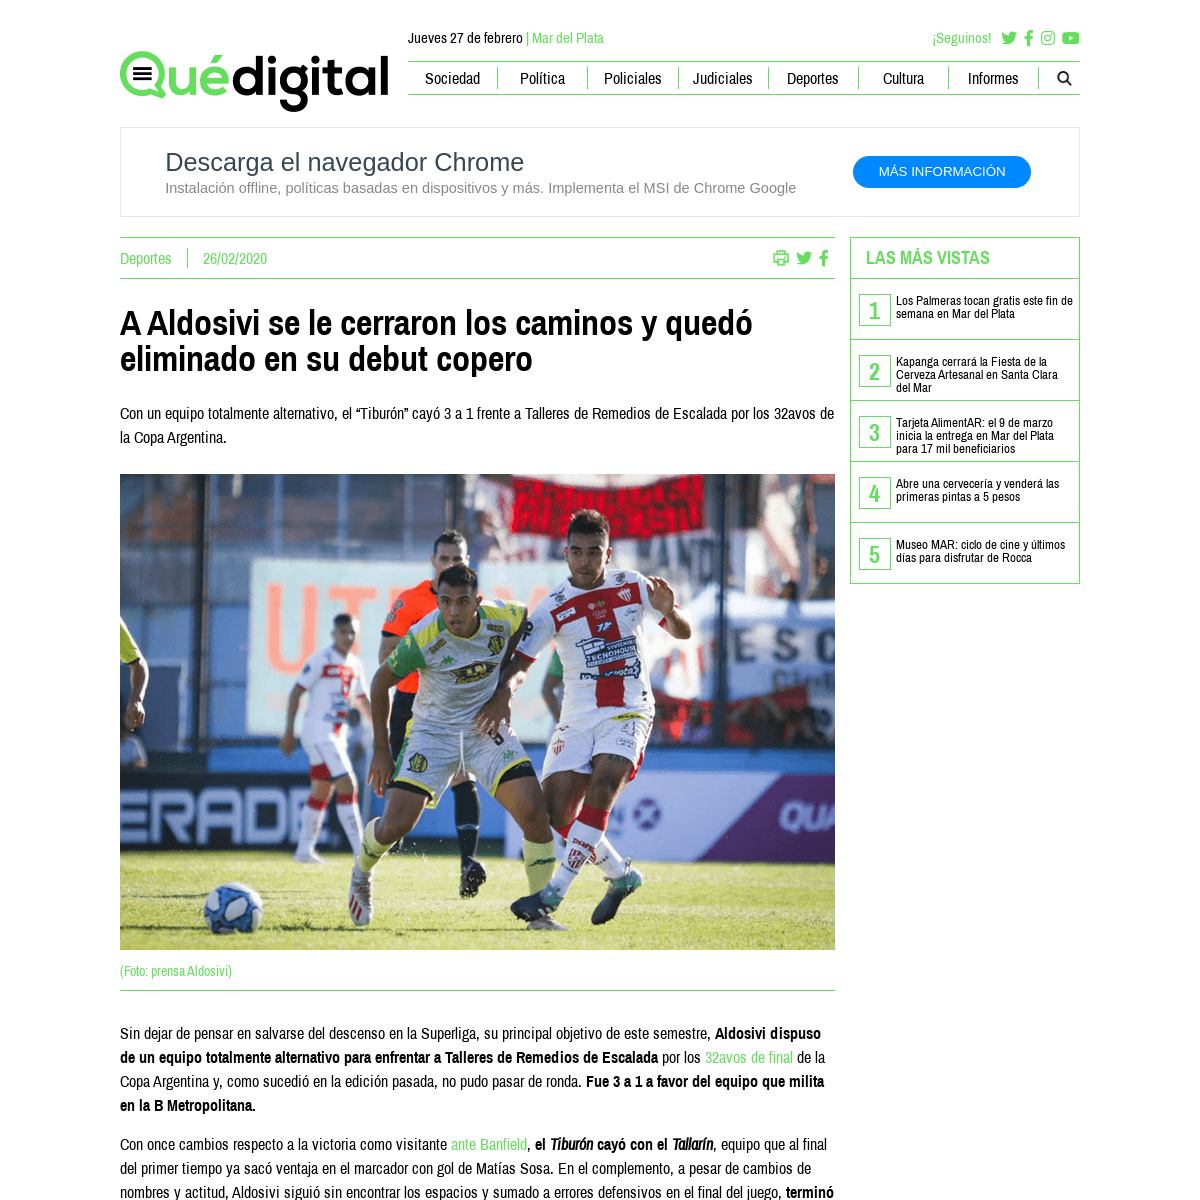 A complete backup of quedigital.com.ar/deportes/a-aldosivi-se-le-cerraron-los-caminos-y-quedo-eliminado-en-su-debut-copero/